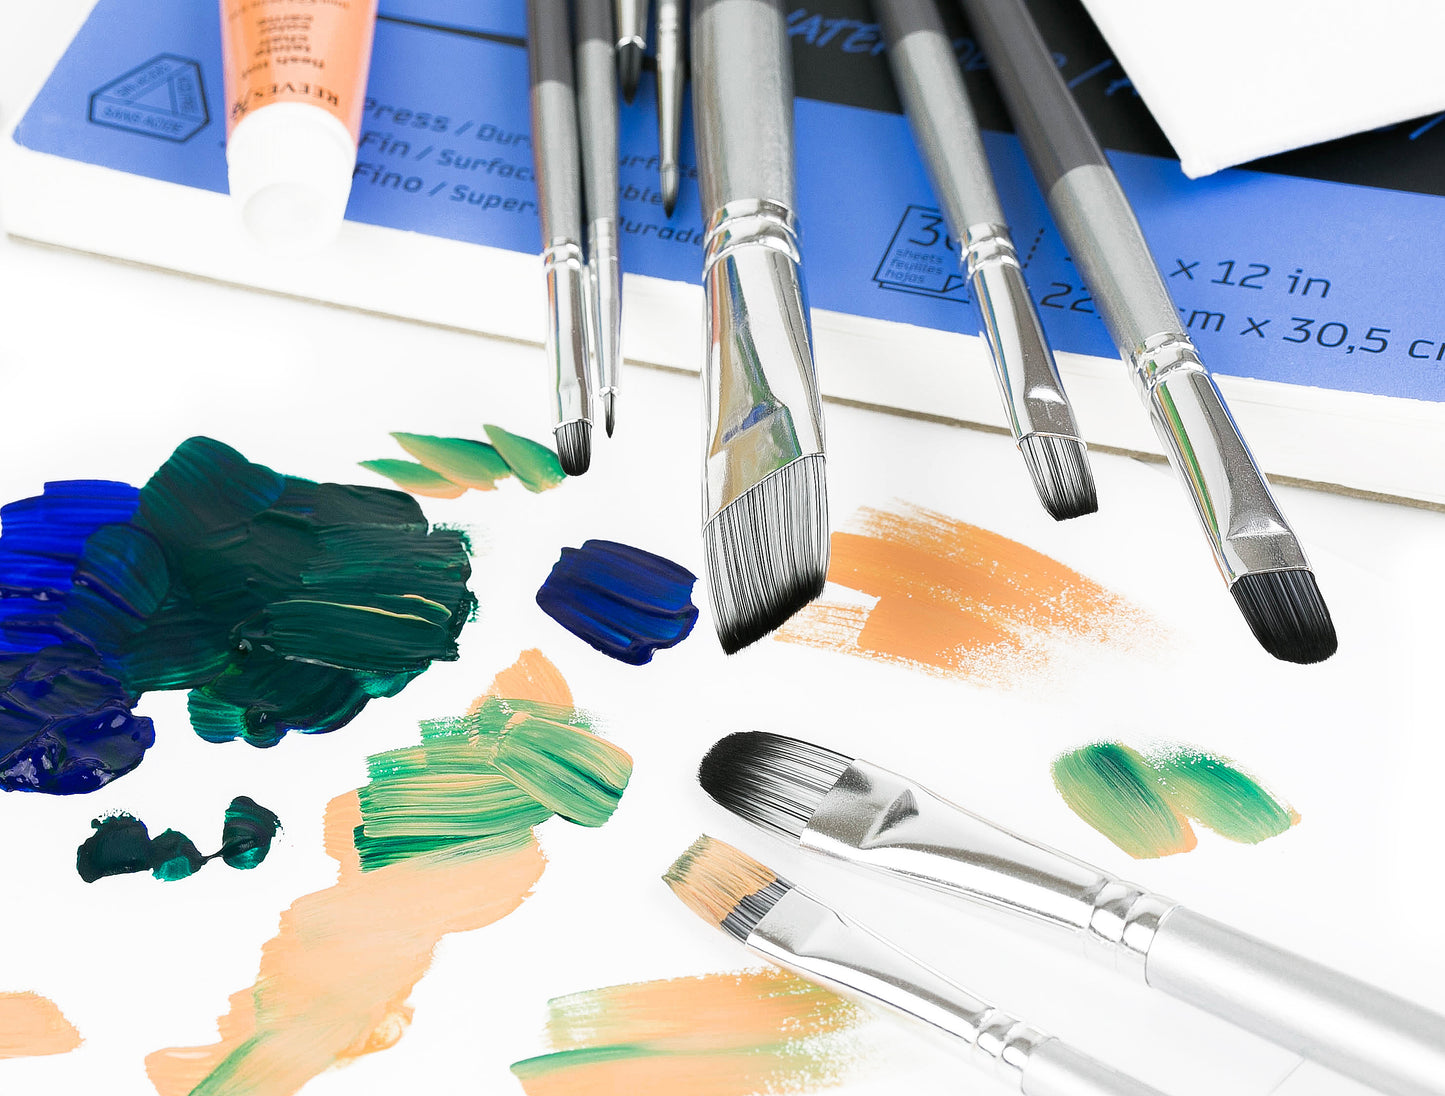 Paint Brushes Set- Grey 10 pcs